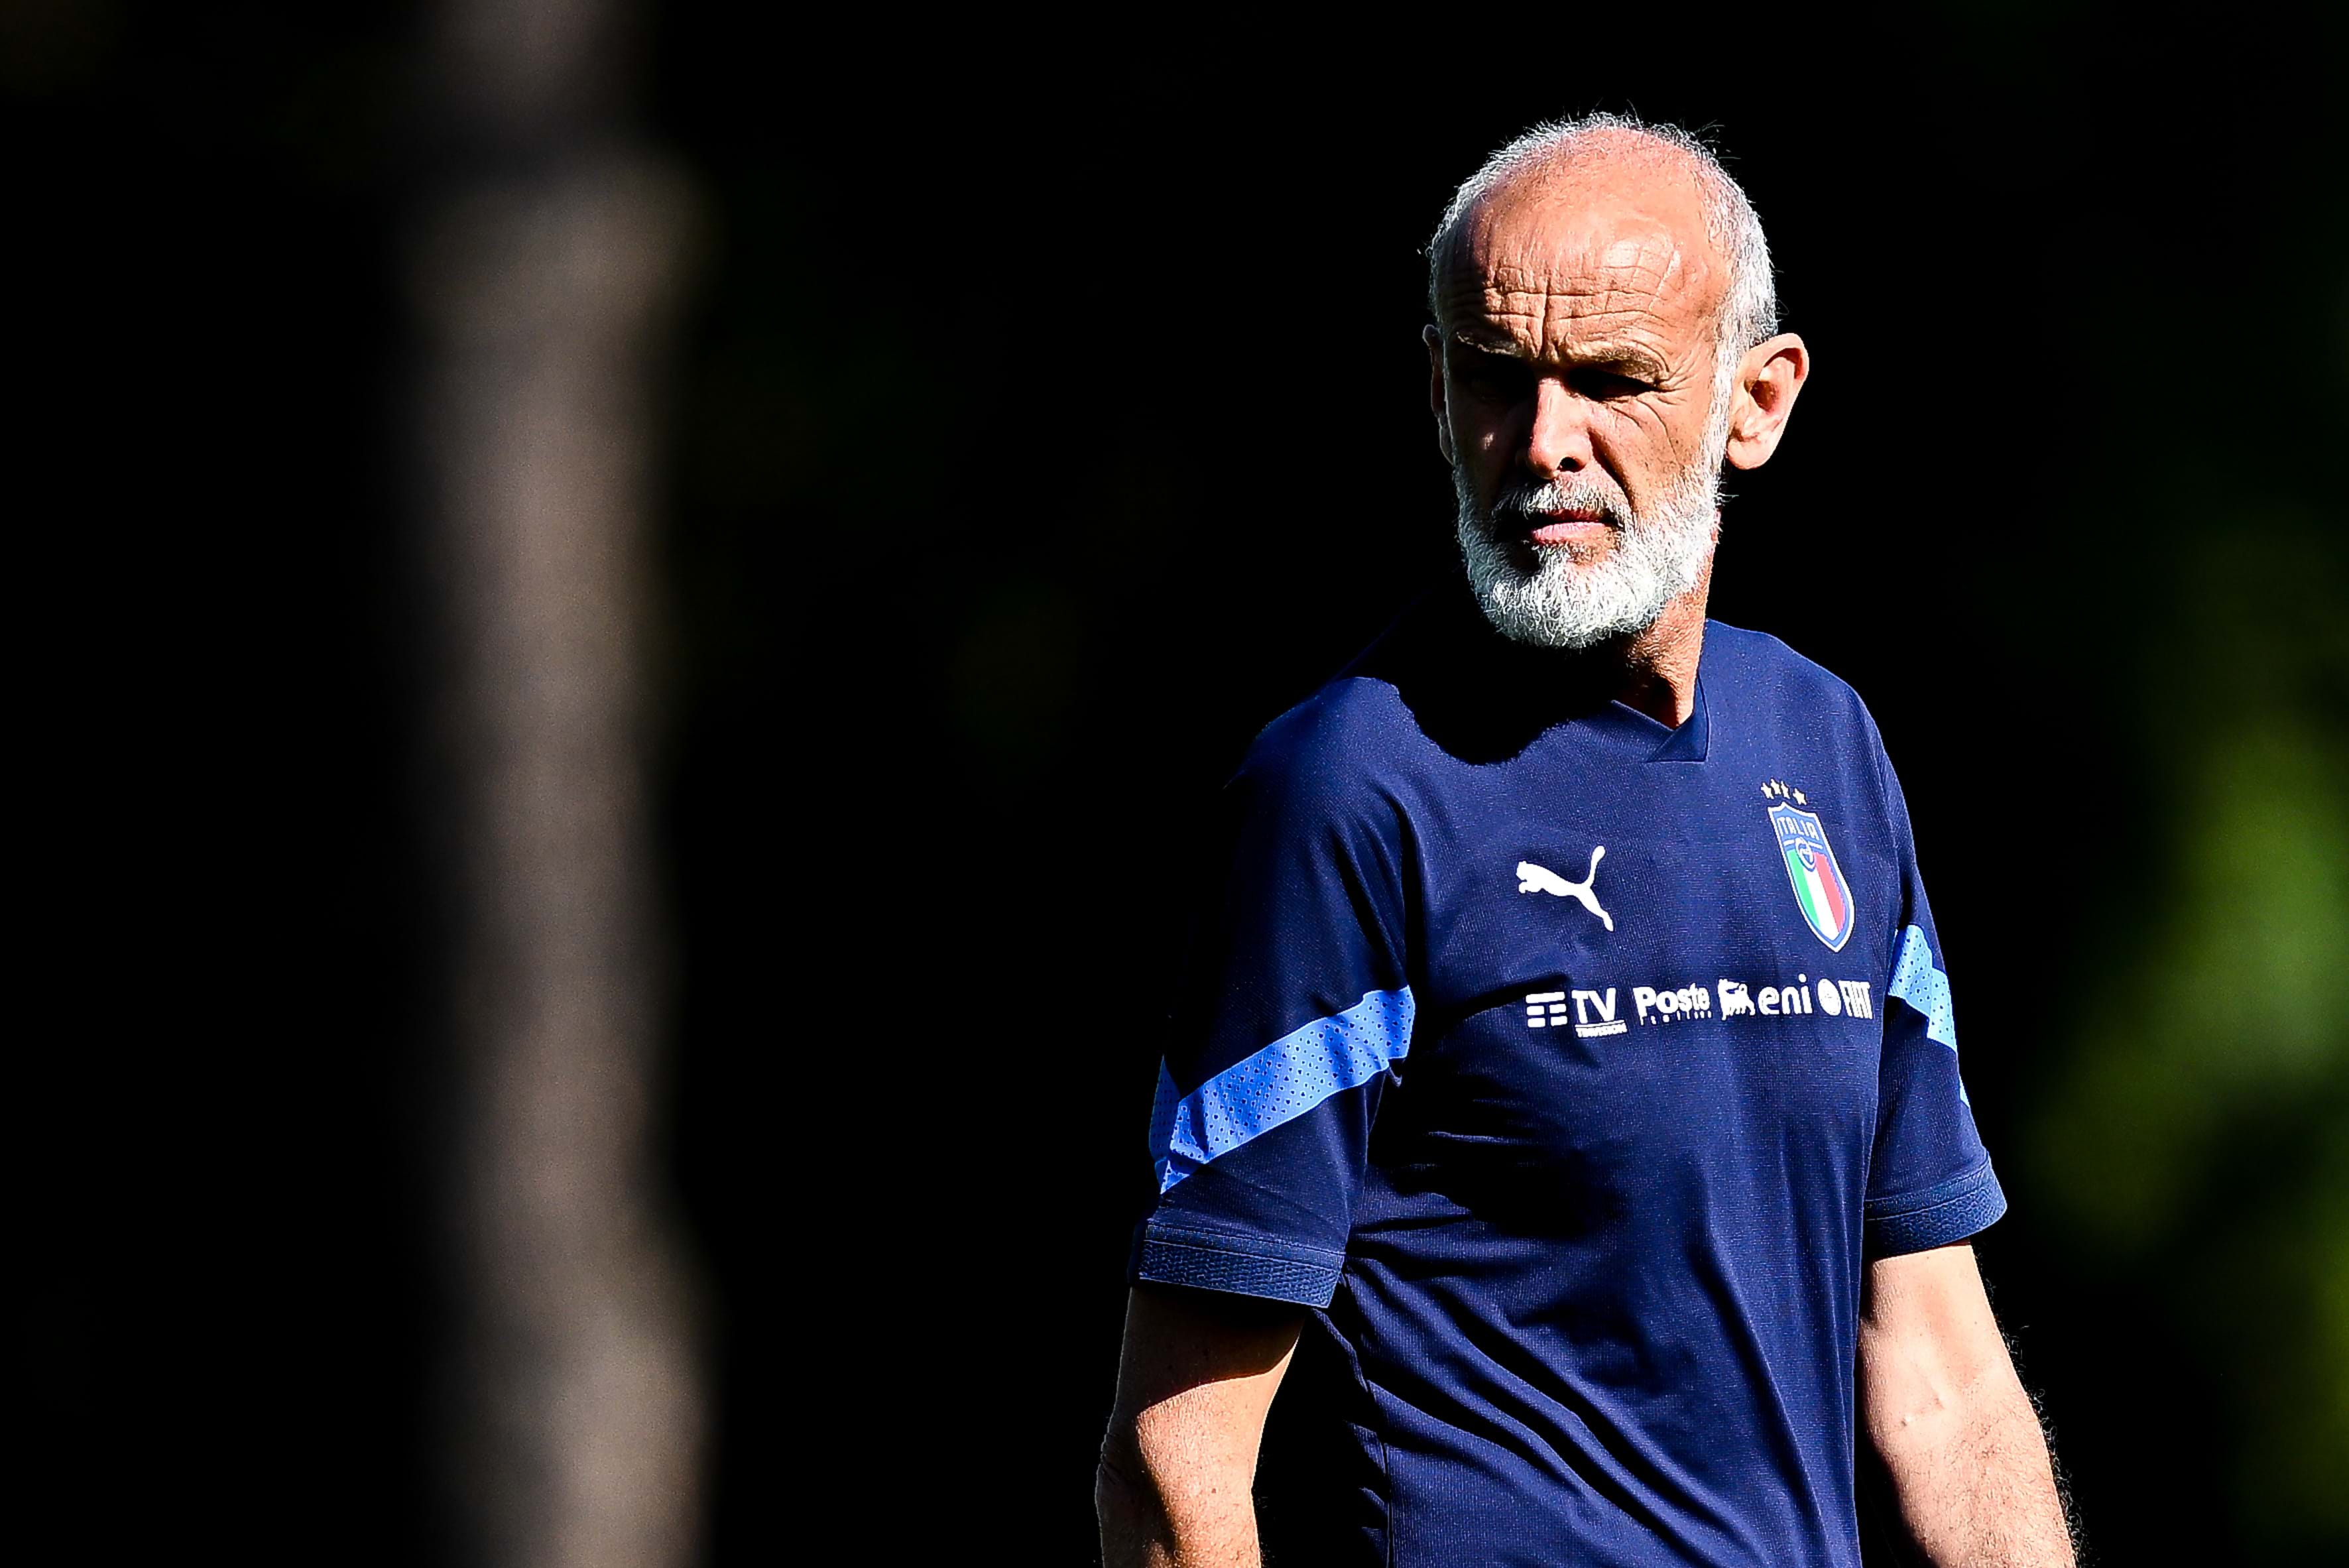 Italy vs Germany on Saturday, Ancona aims to spur on the Azzurrini. Nicolato: 